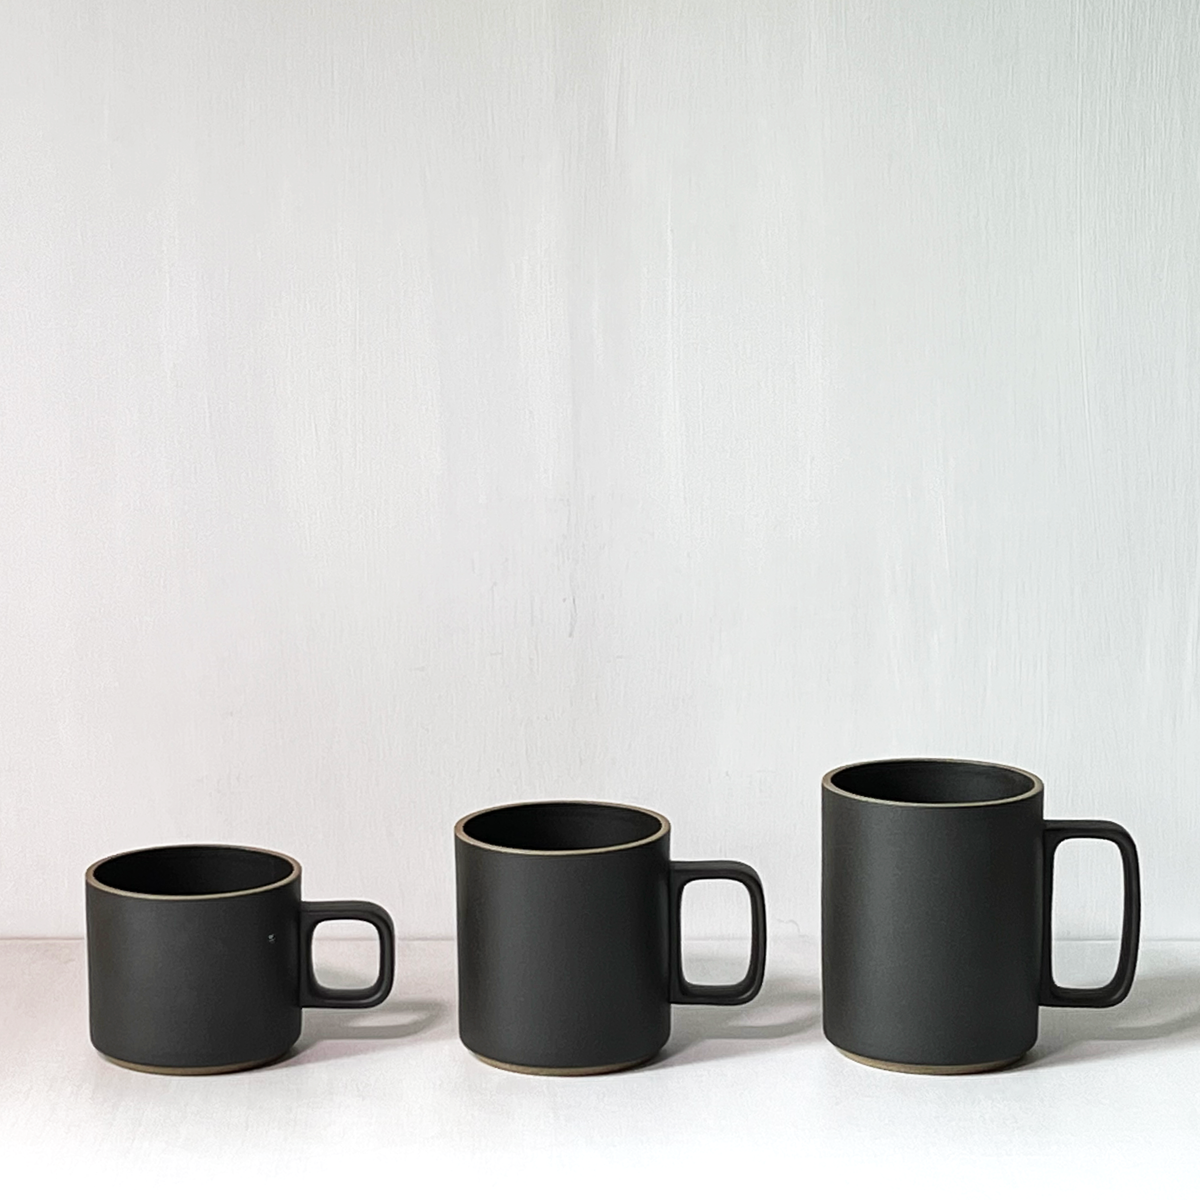 Hasami Porcelain Mug, Dark Brown